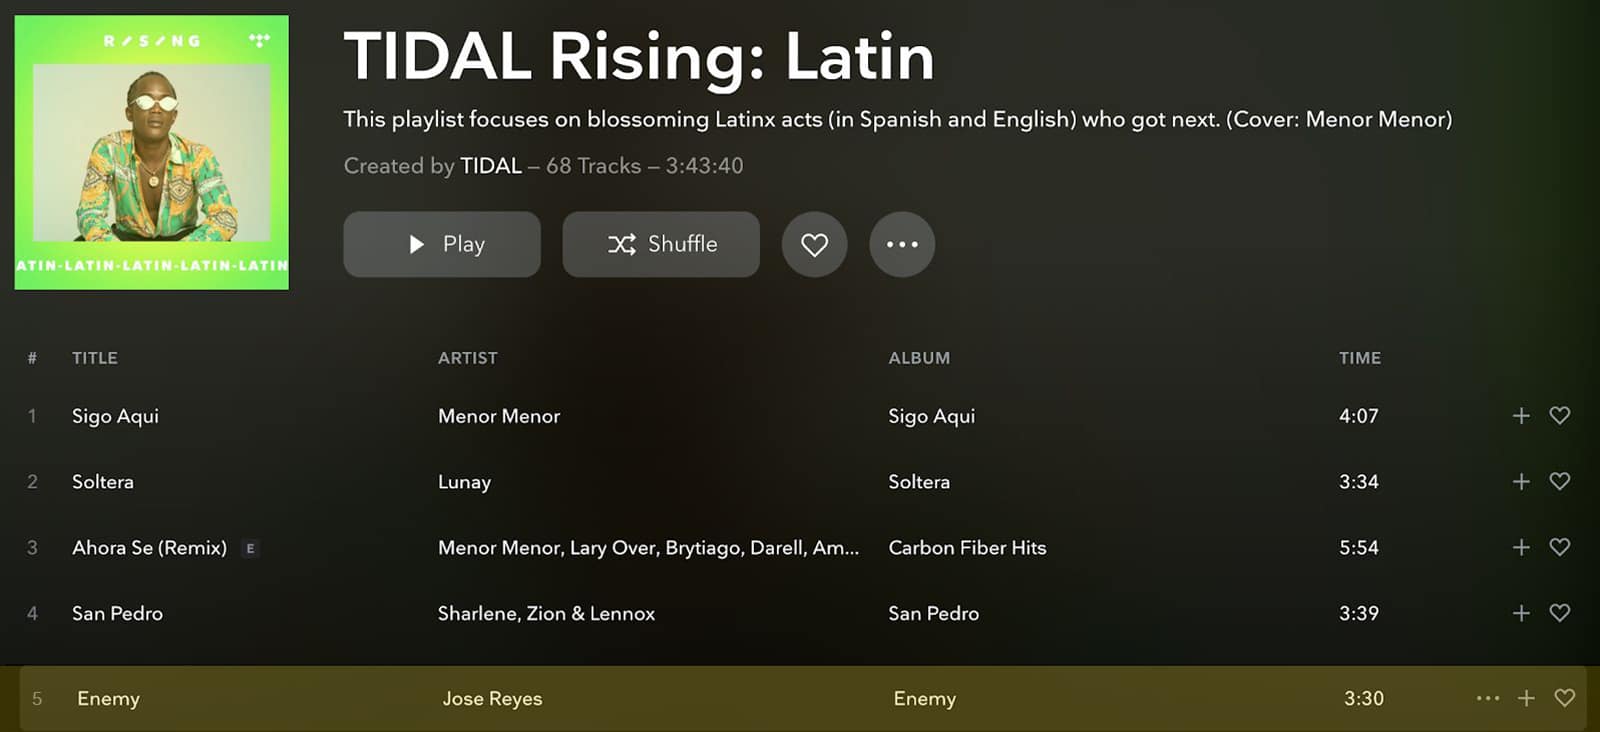 tidal rising latin Playlist